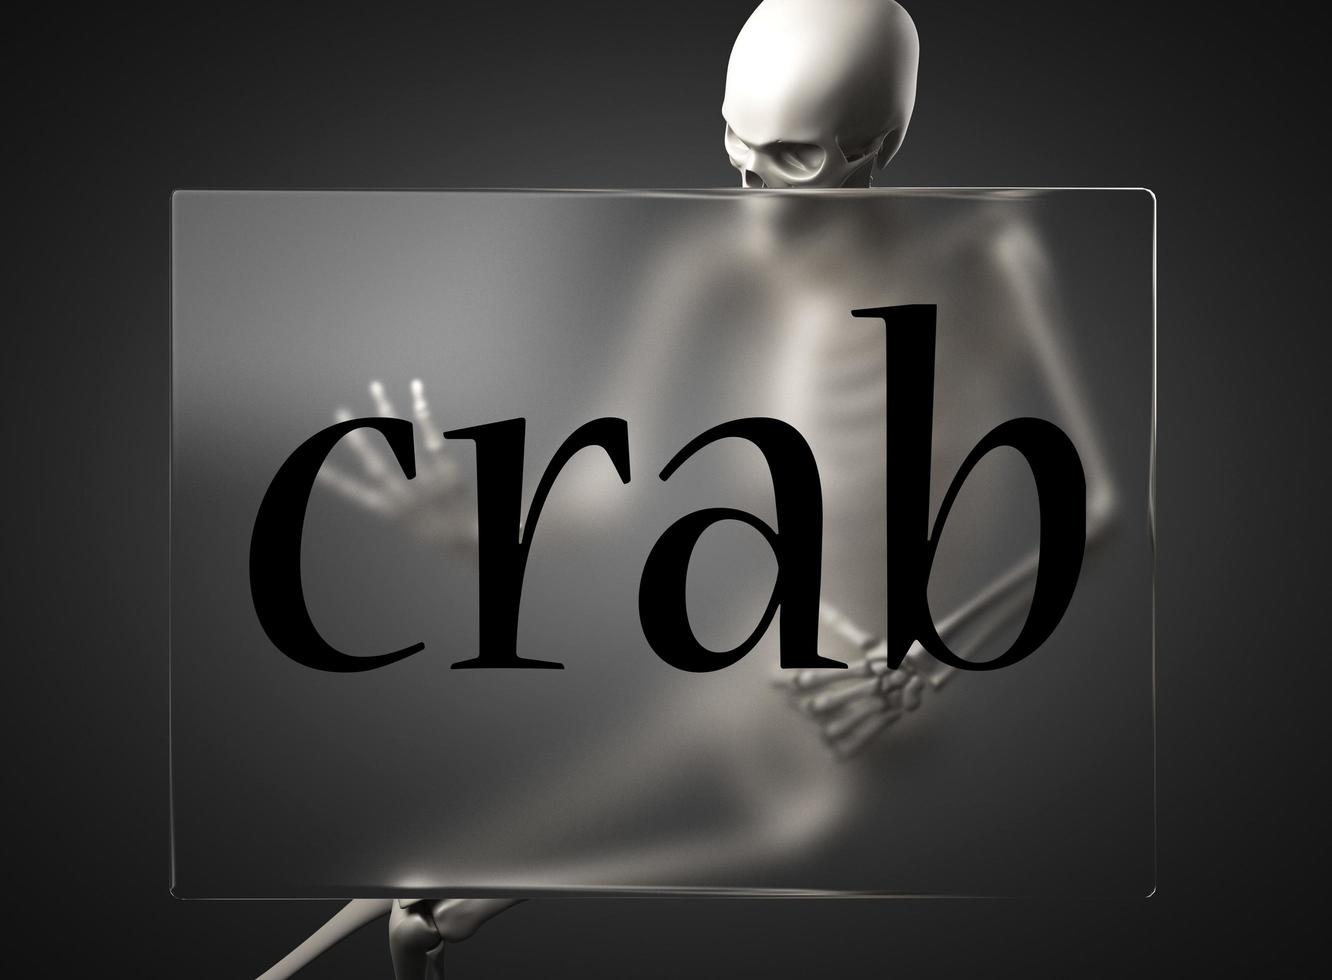 mot crabe sur verre et squelette photo